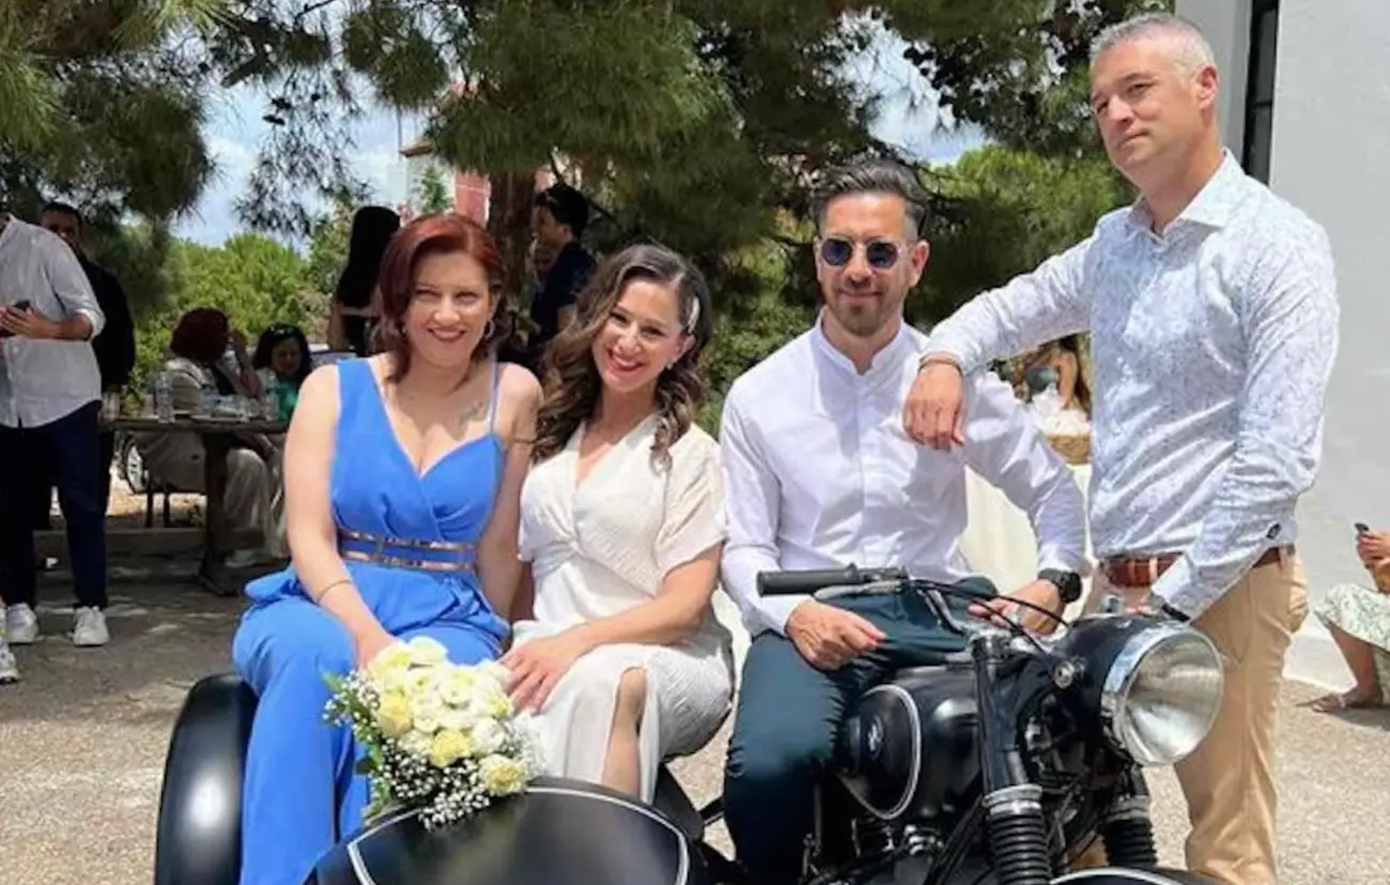 Vintage γάμος στη Χαλκίδα: Γαμπρός έφτιαξε μοτοσικλέτα και έβαλε τη νύφη σε καλάθι